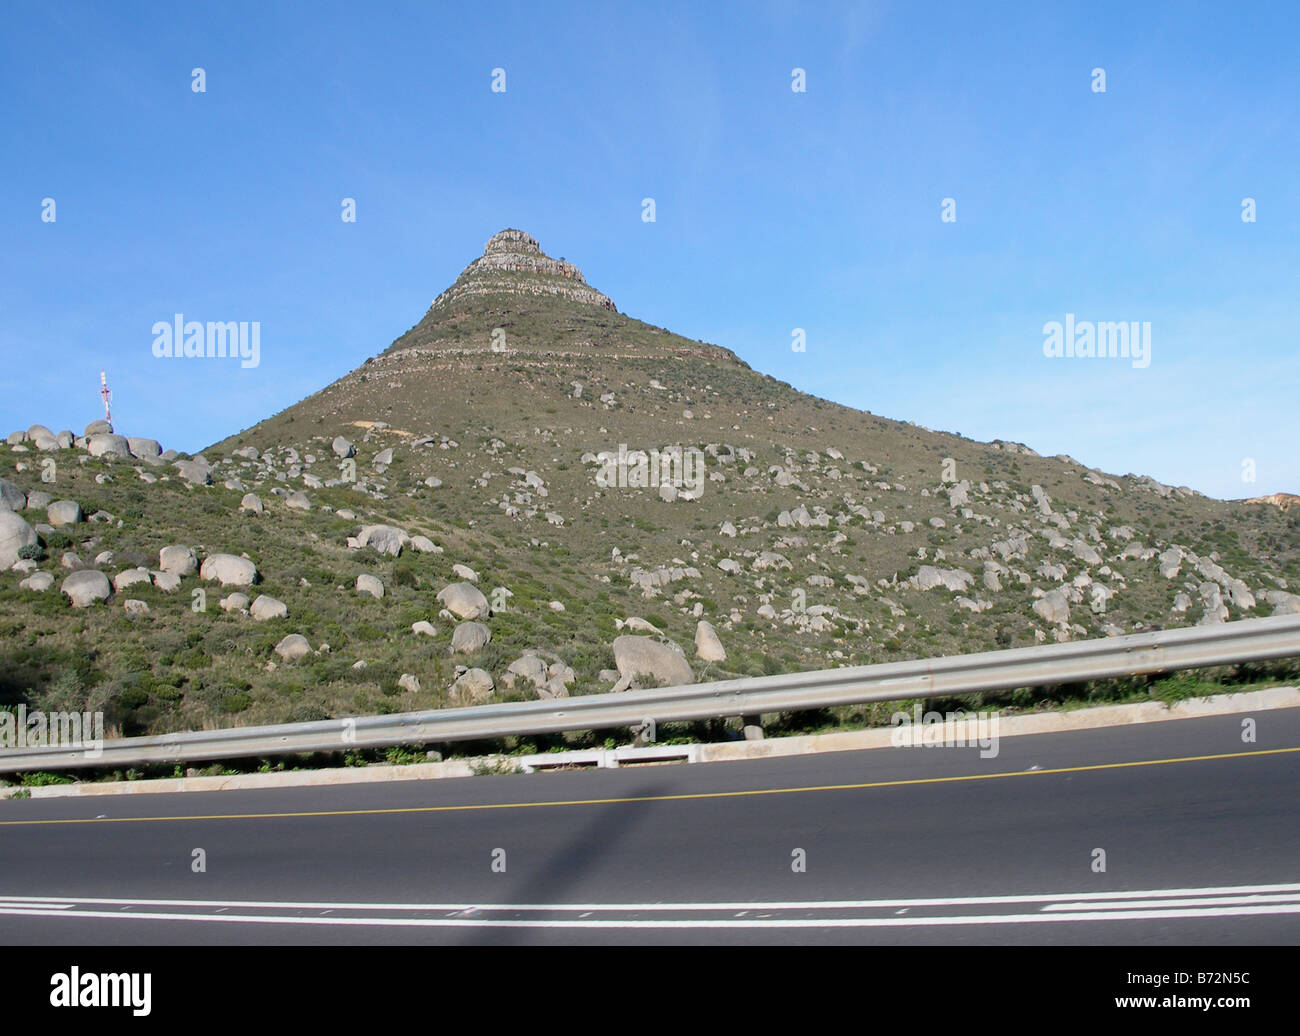 Une colline sur la route entre le cap et le Cap de Bonne-Espérance, Afrique du Sud Banque D'Images